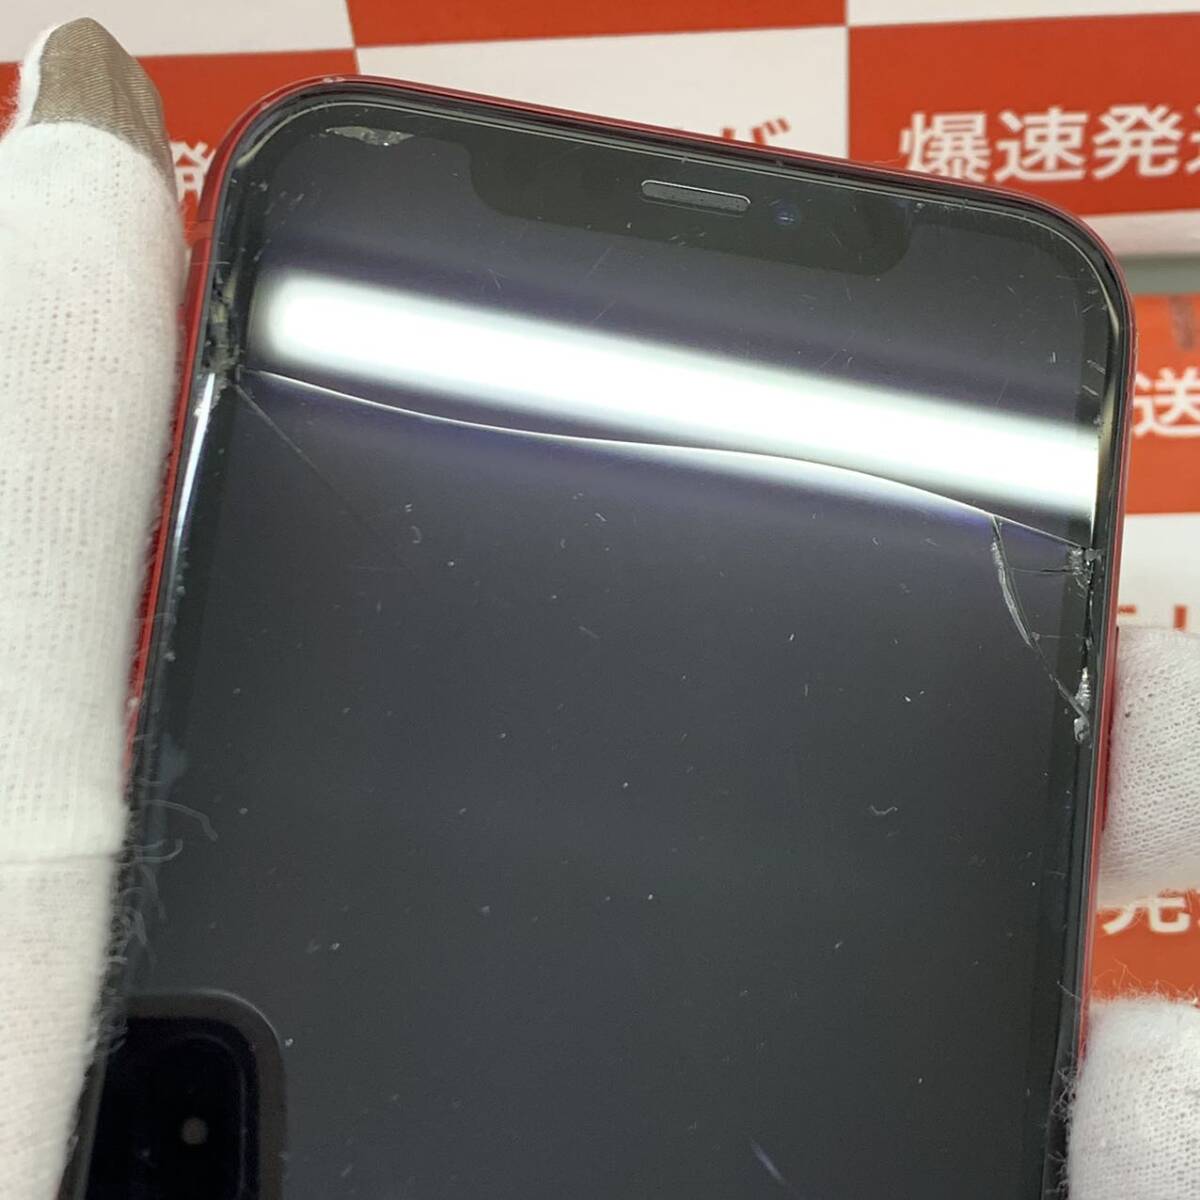 爆速発送 ジャンク品 iPhoneXR 64GB AU版SIMフリー レッド 本体のみ MT062J/A 両面とカメラレンズに割れ、電池がサービス状態になっているの画像2